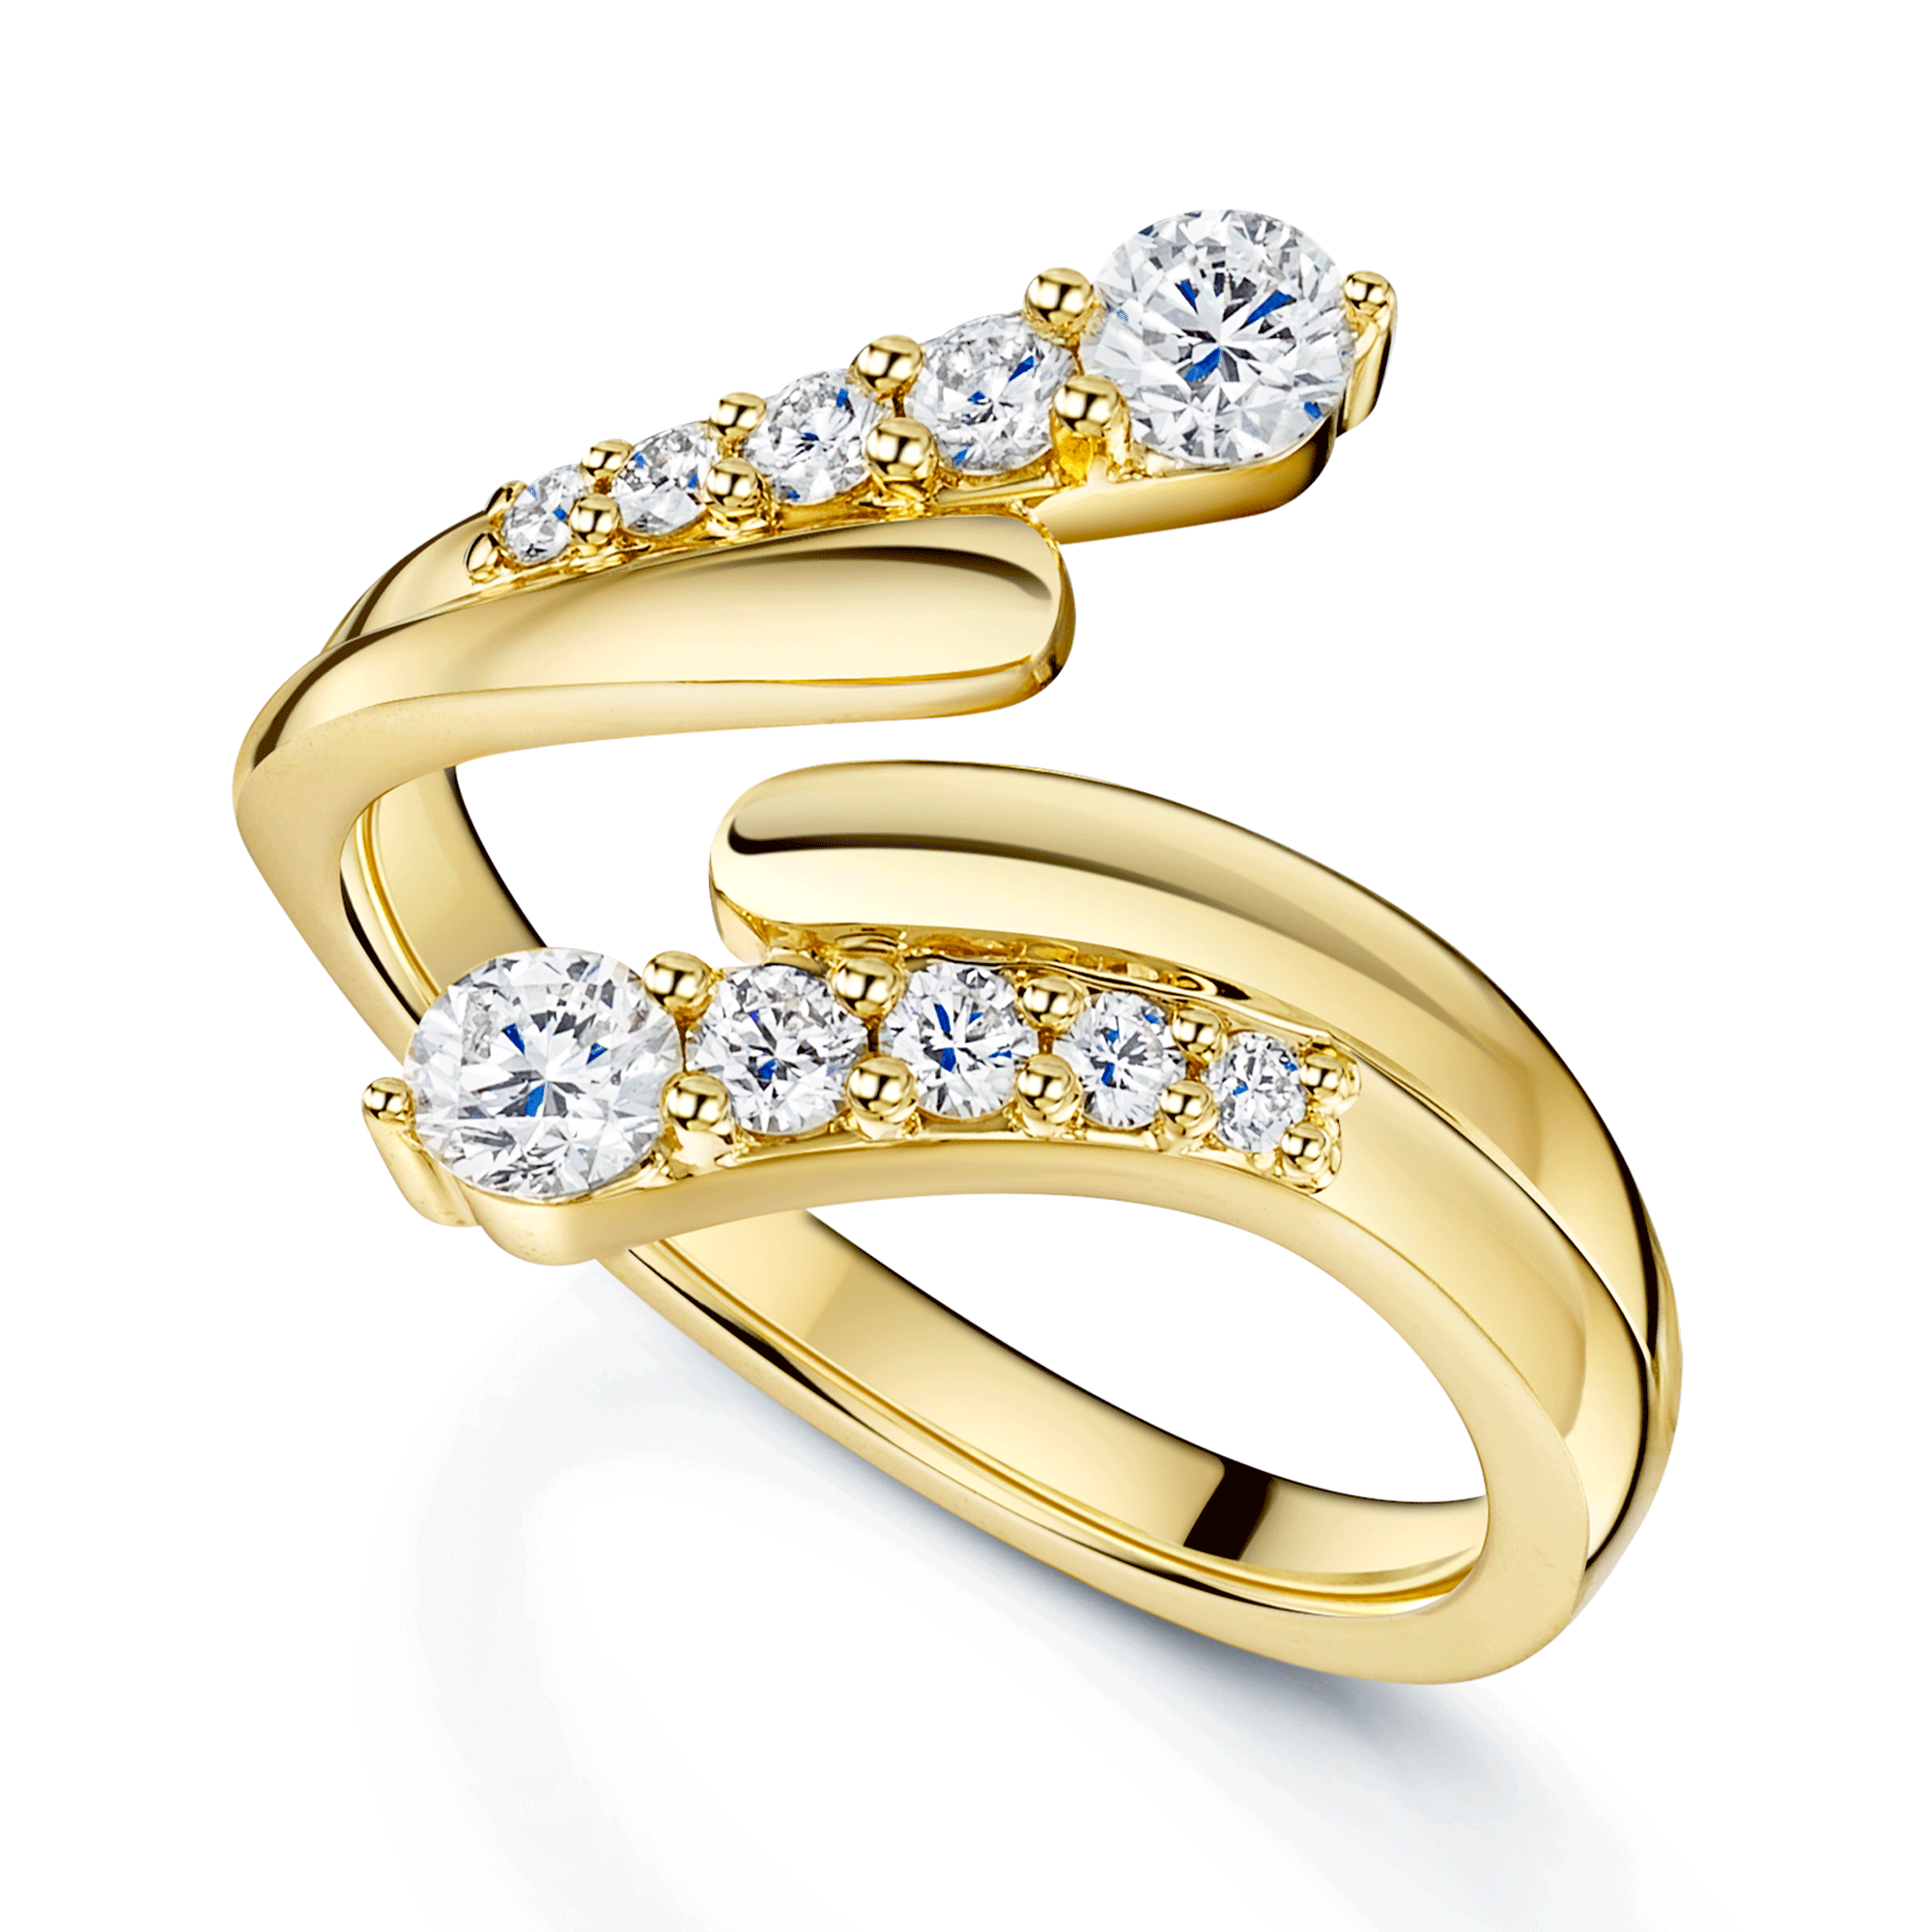 OPEIA Nova Collection Yellow Gold Round Brilliant Cut Diamond Wraparound Ring